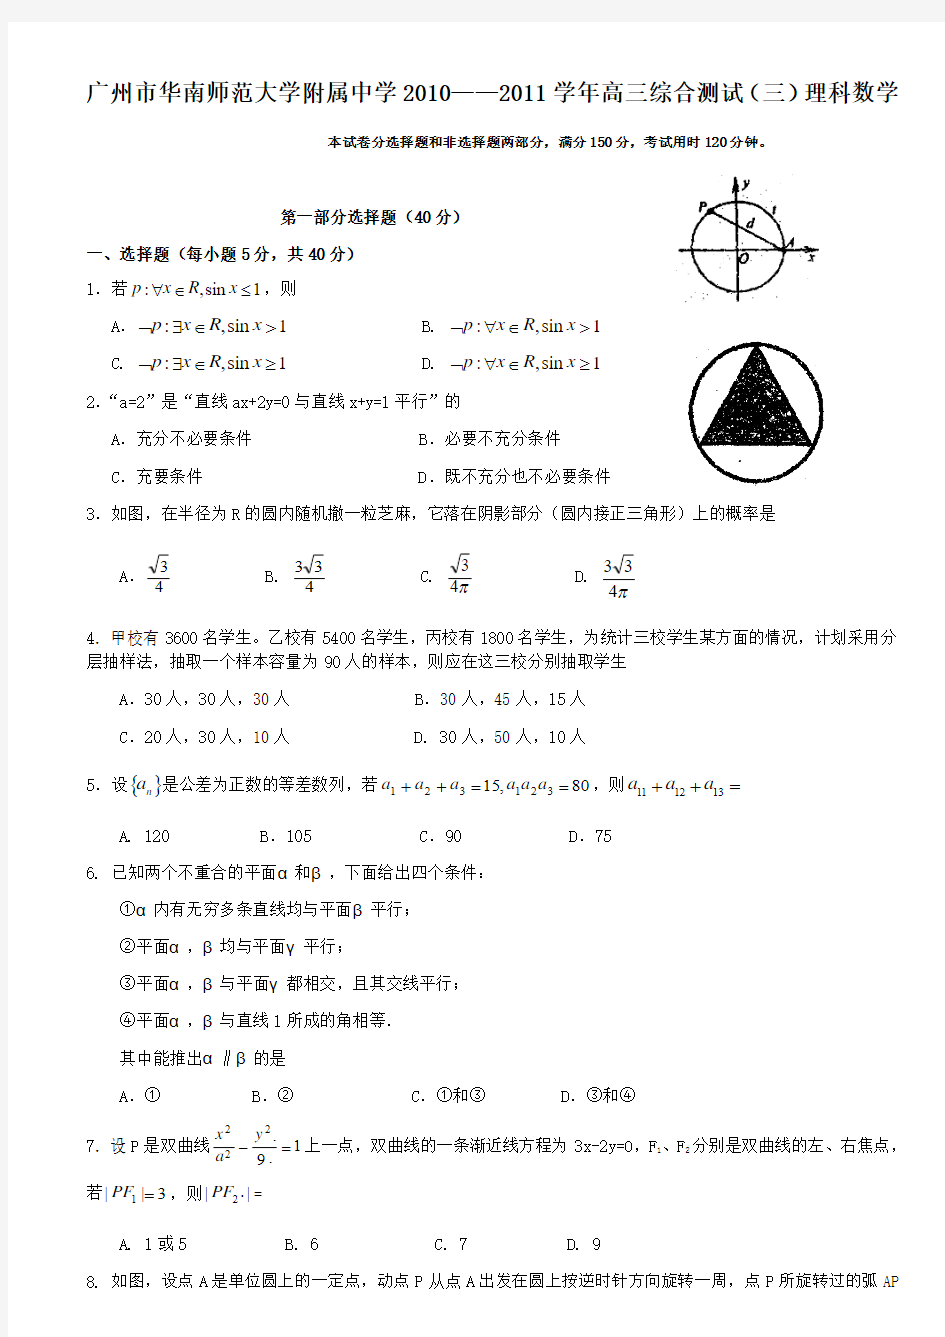 广州市华南师范大学附属中学2010——2011学年高三综合测试(三)理科数学